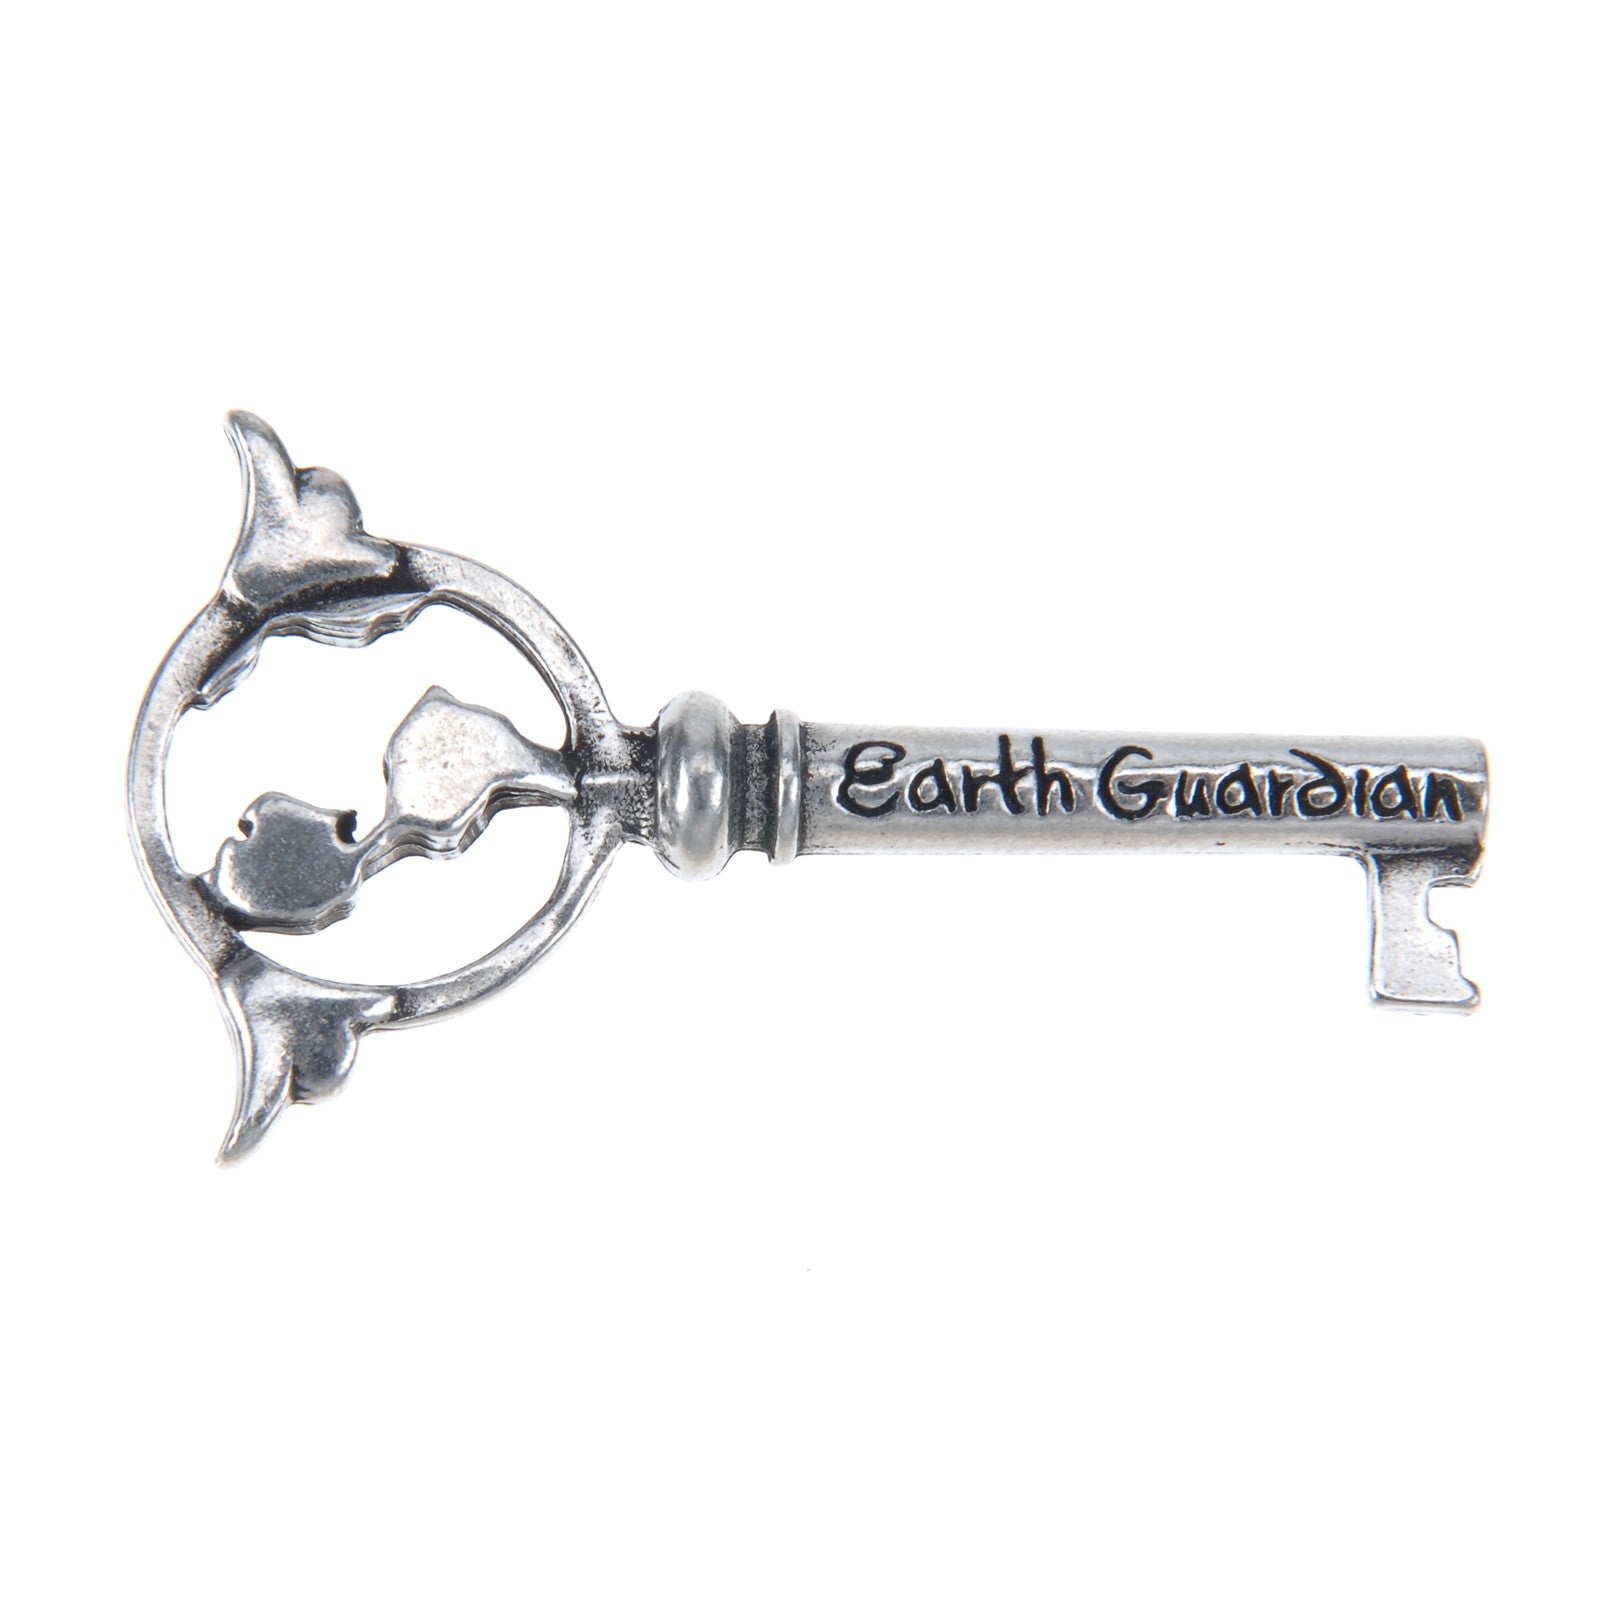 Earth Guardian Key - Whitney Howard Designs